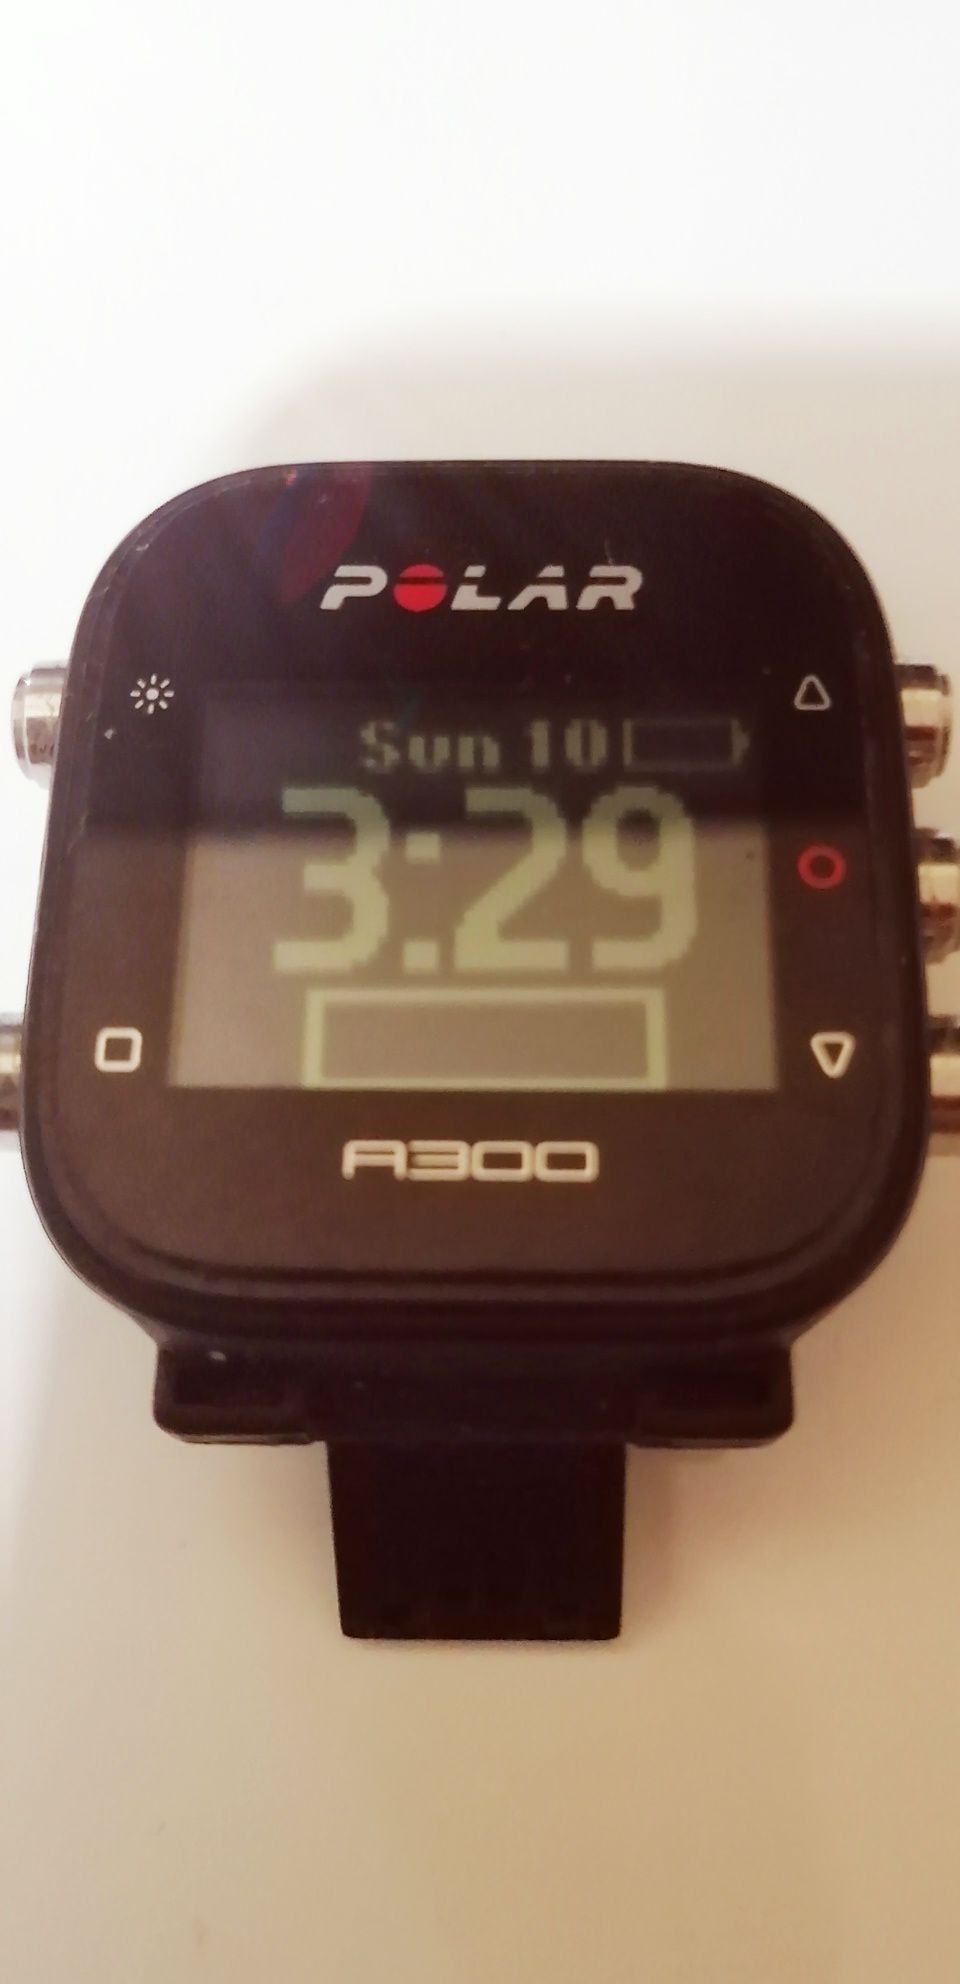 Relógio desportivo Polar a300 ler discrição.